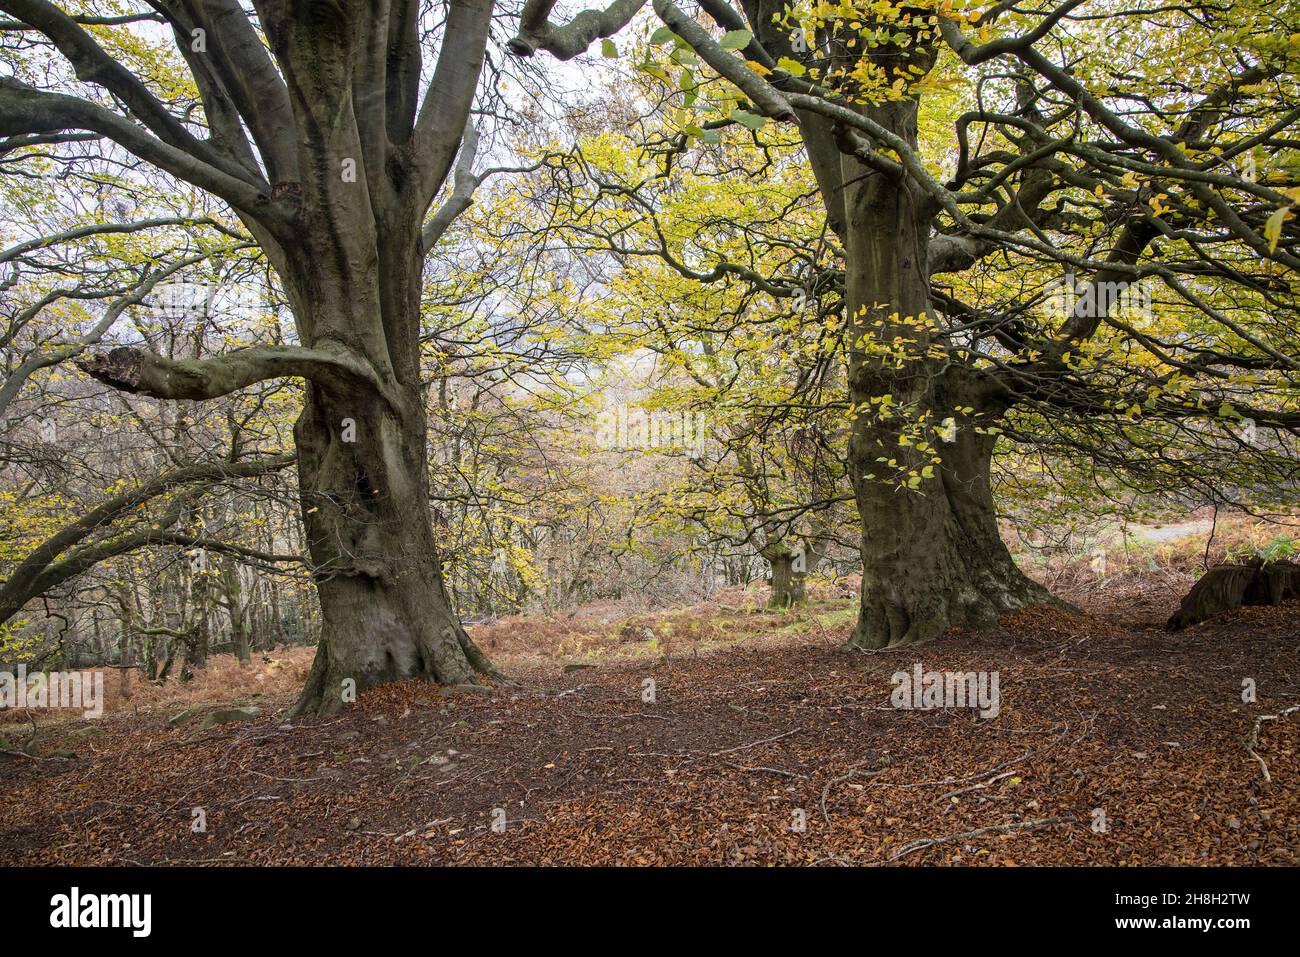 Établi forêt à feuilles larges ouvertes, Blorenge, pays de Galles, Royaume-Uni Banque D'Images